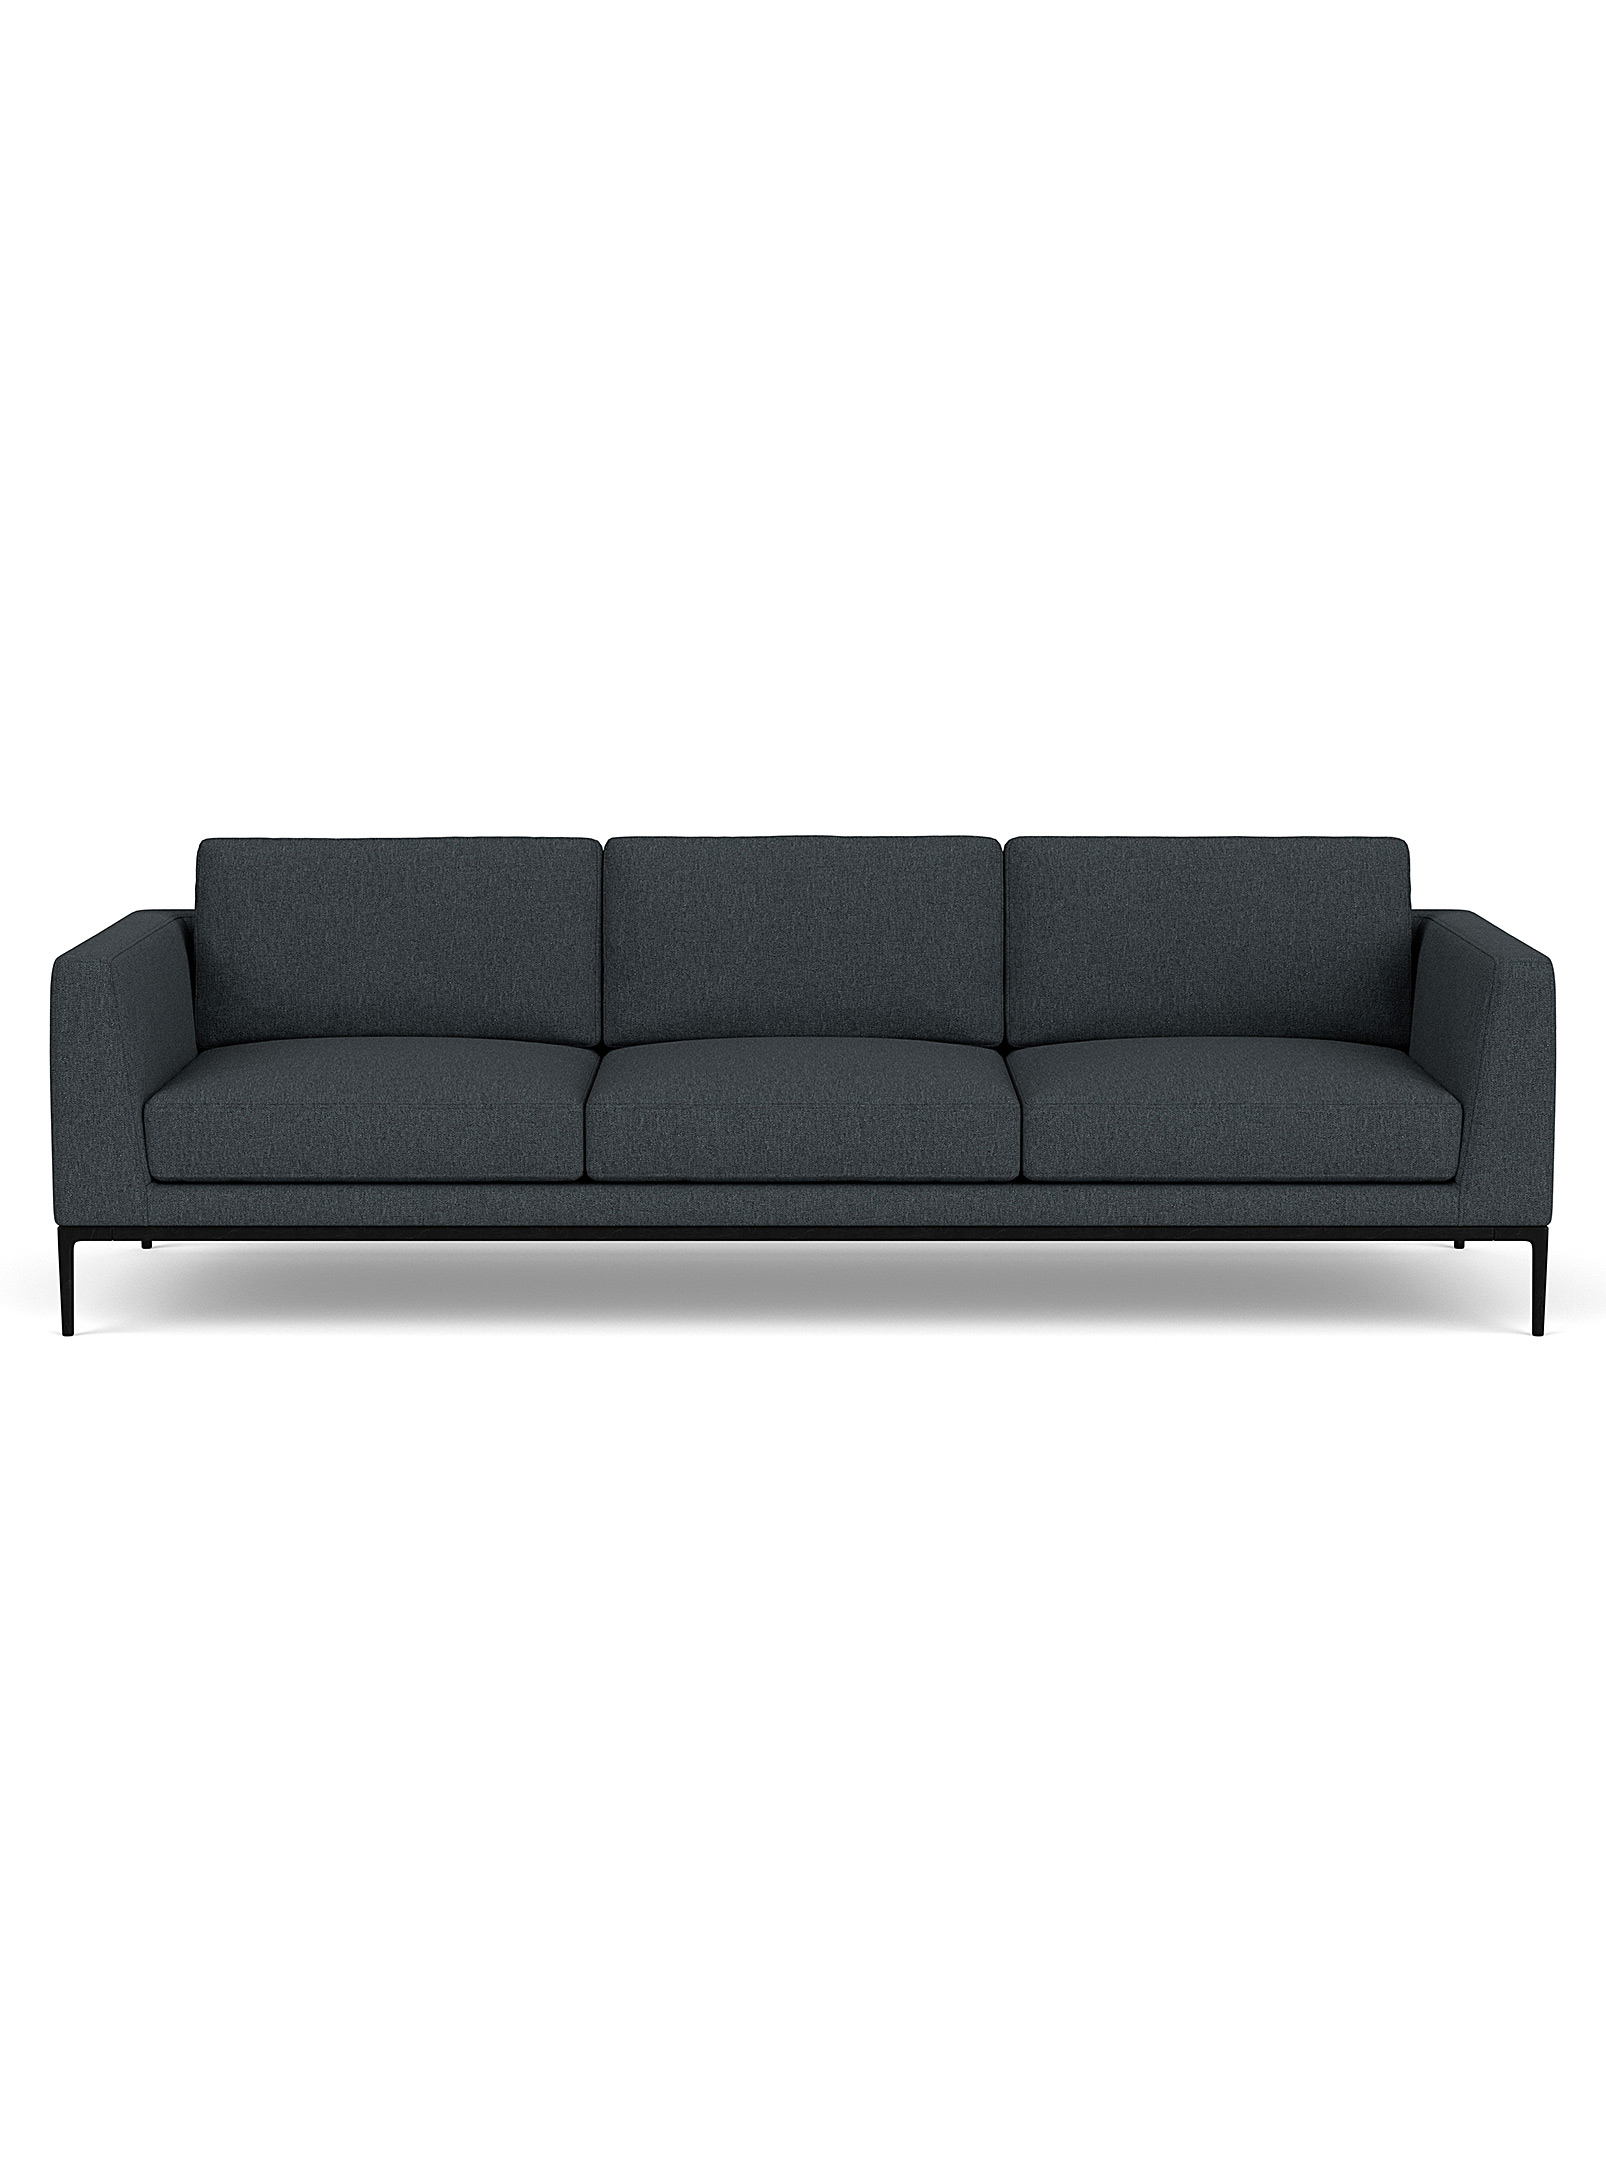 EQ3 - Oma sleek fabric couch